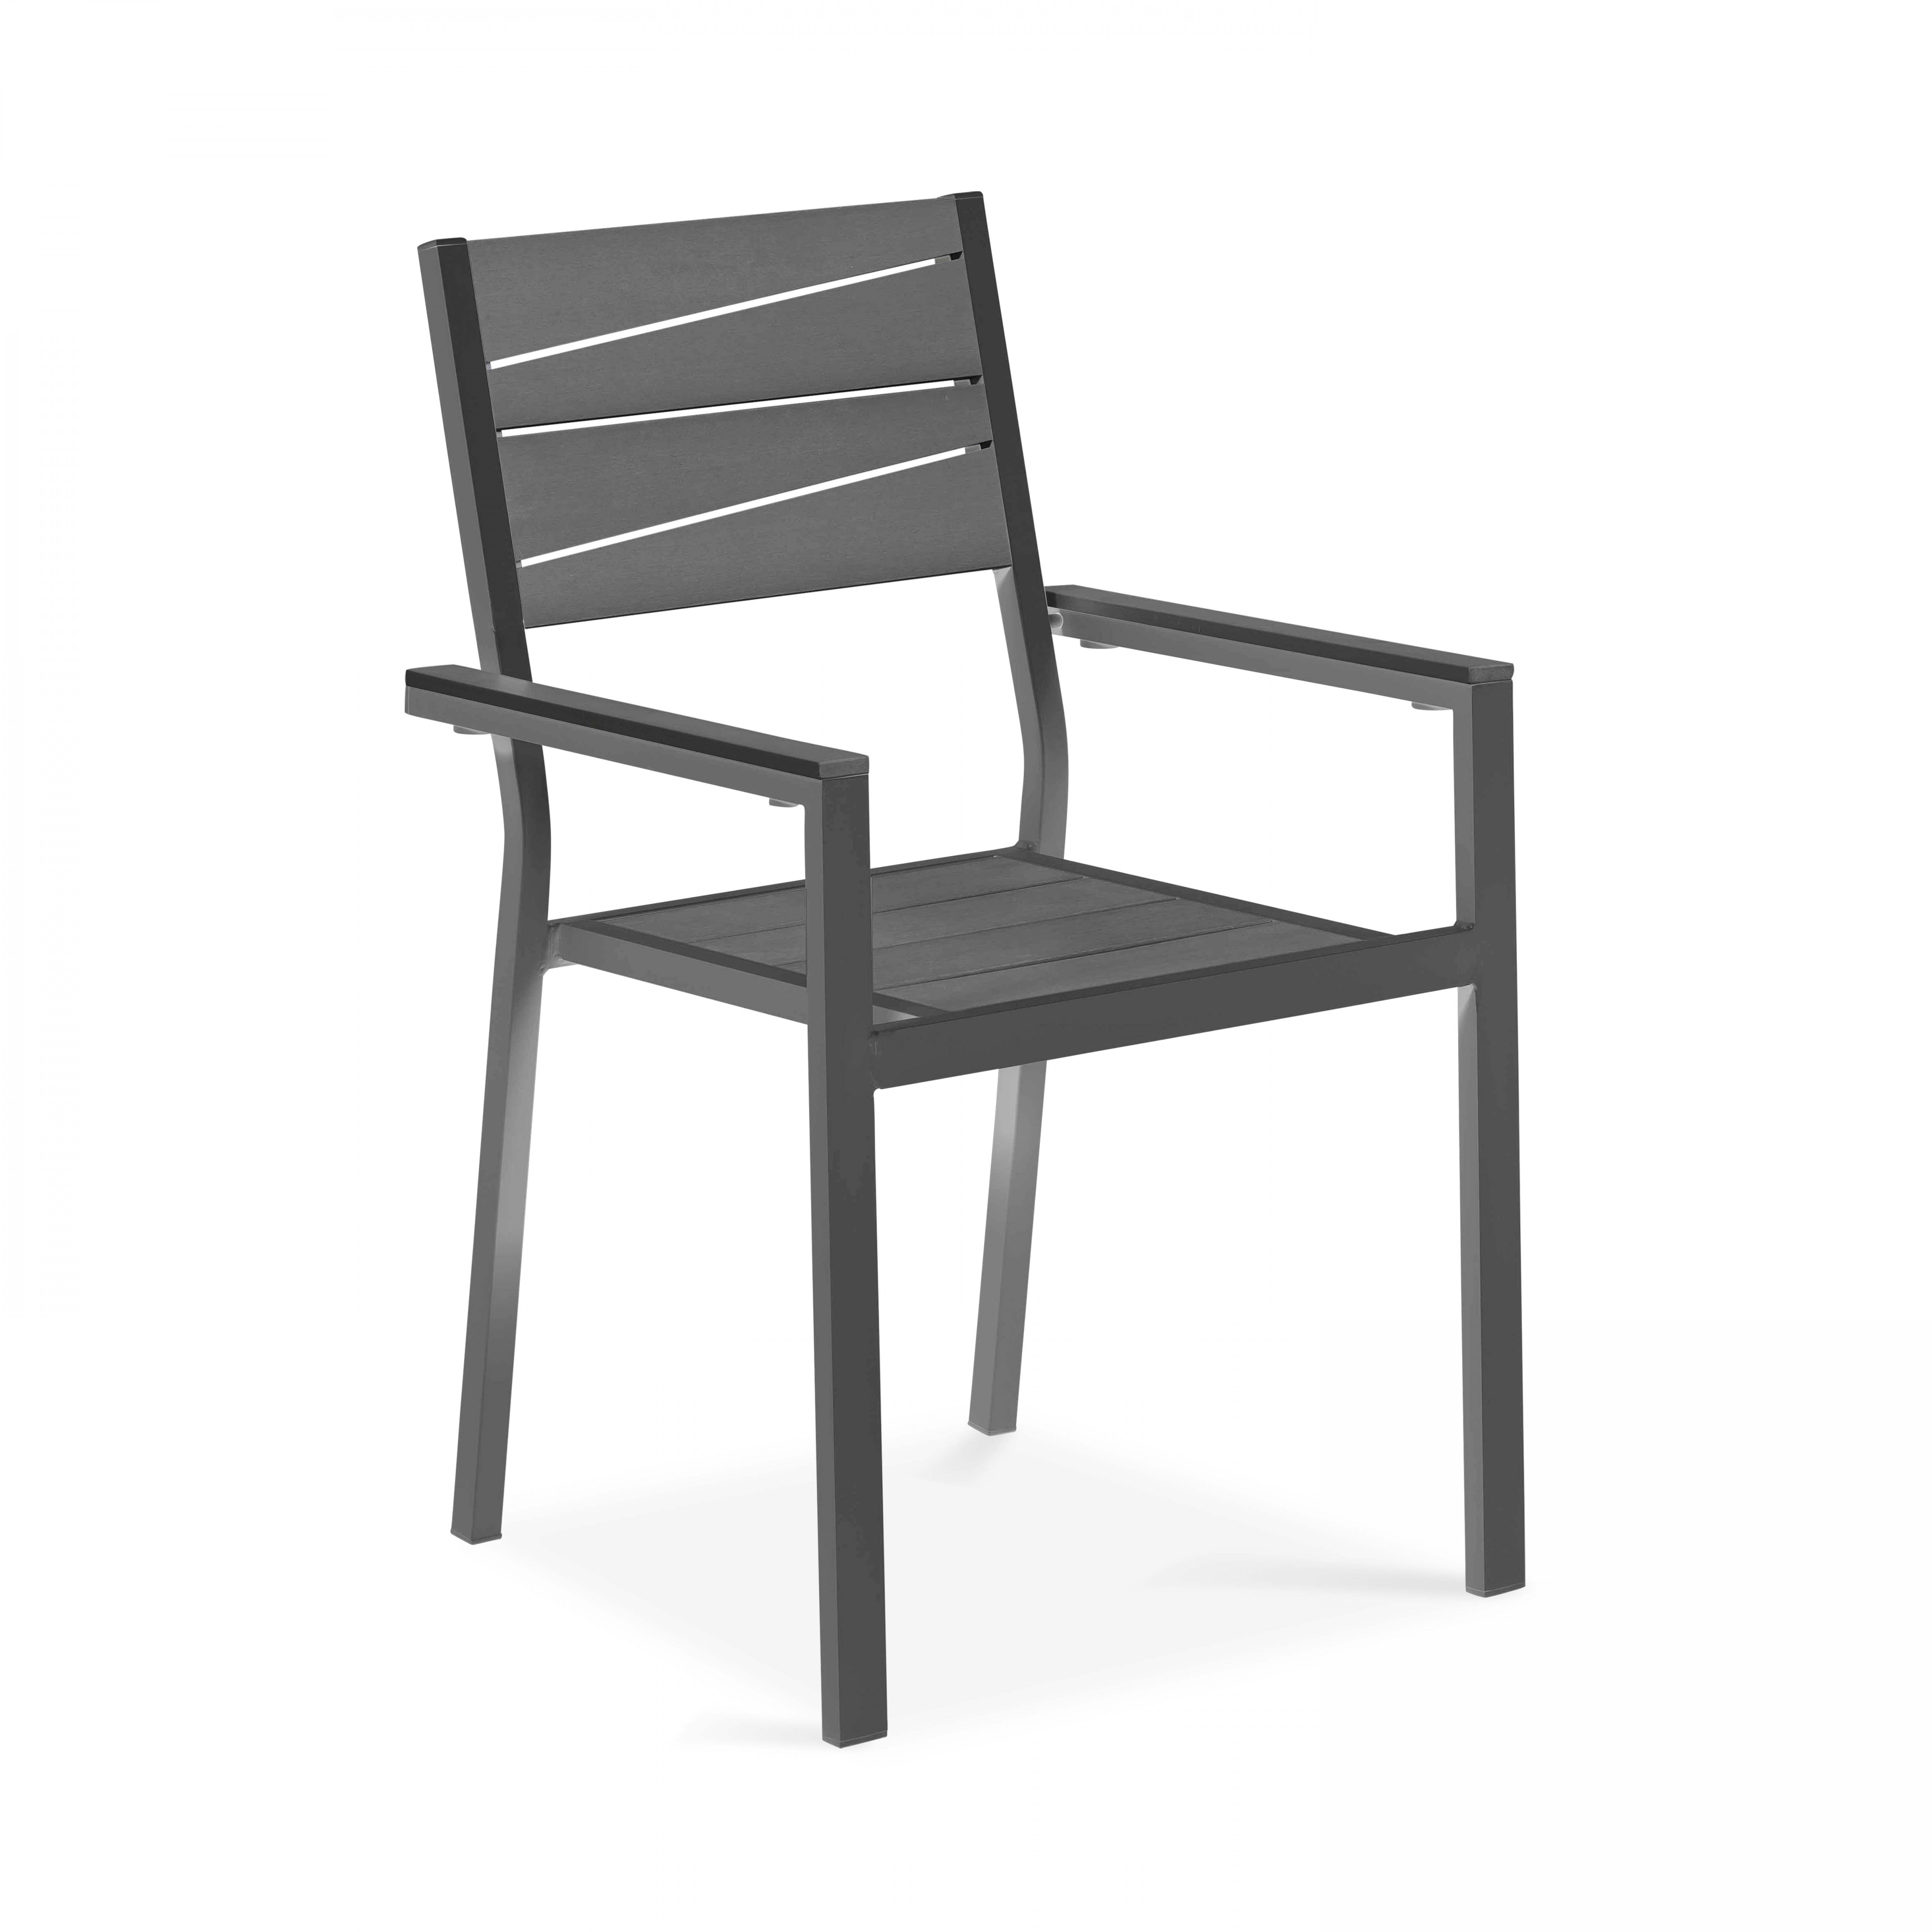 Chaise de jardin avec accoudoirs en aluminium et polywood